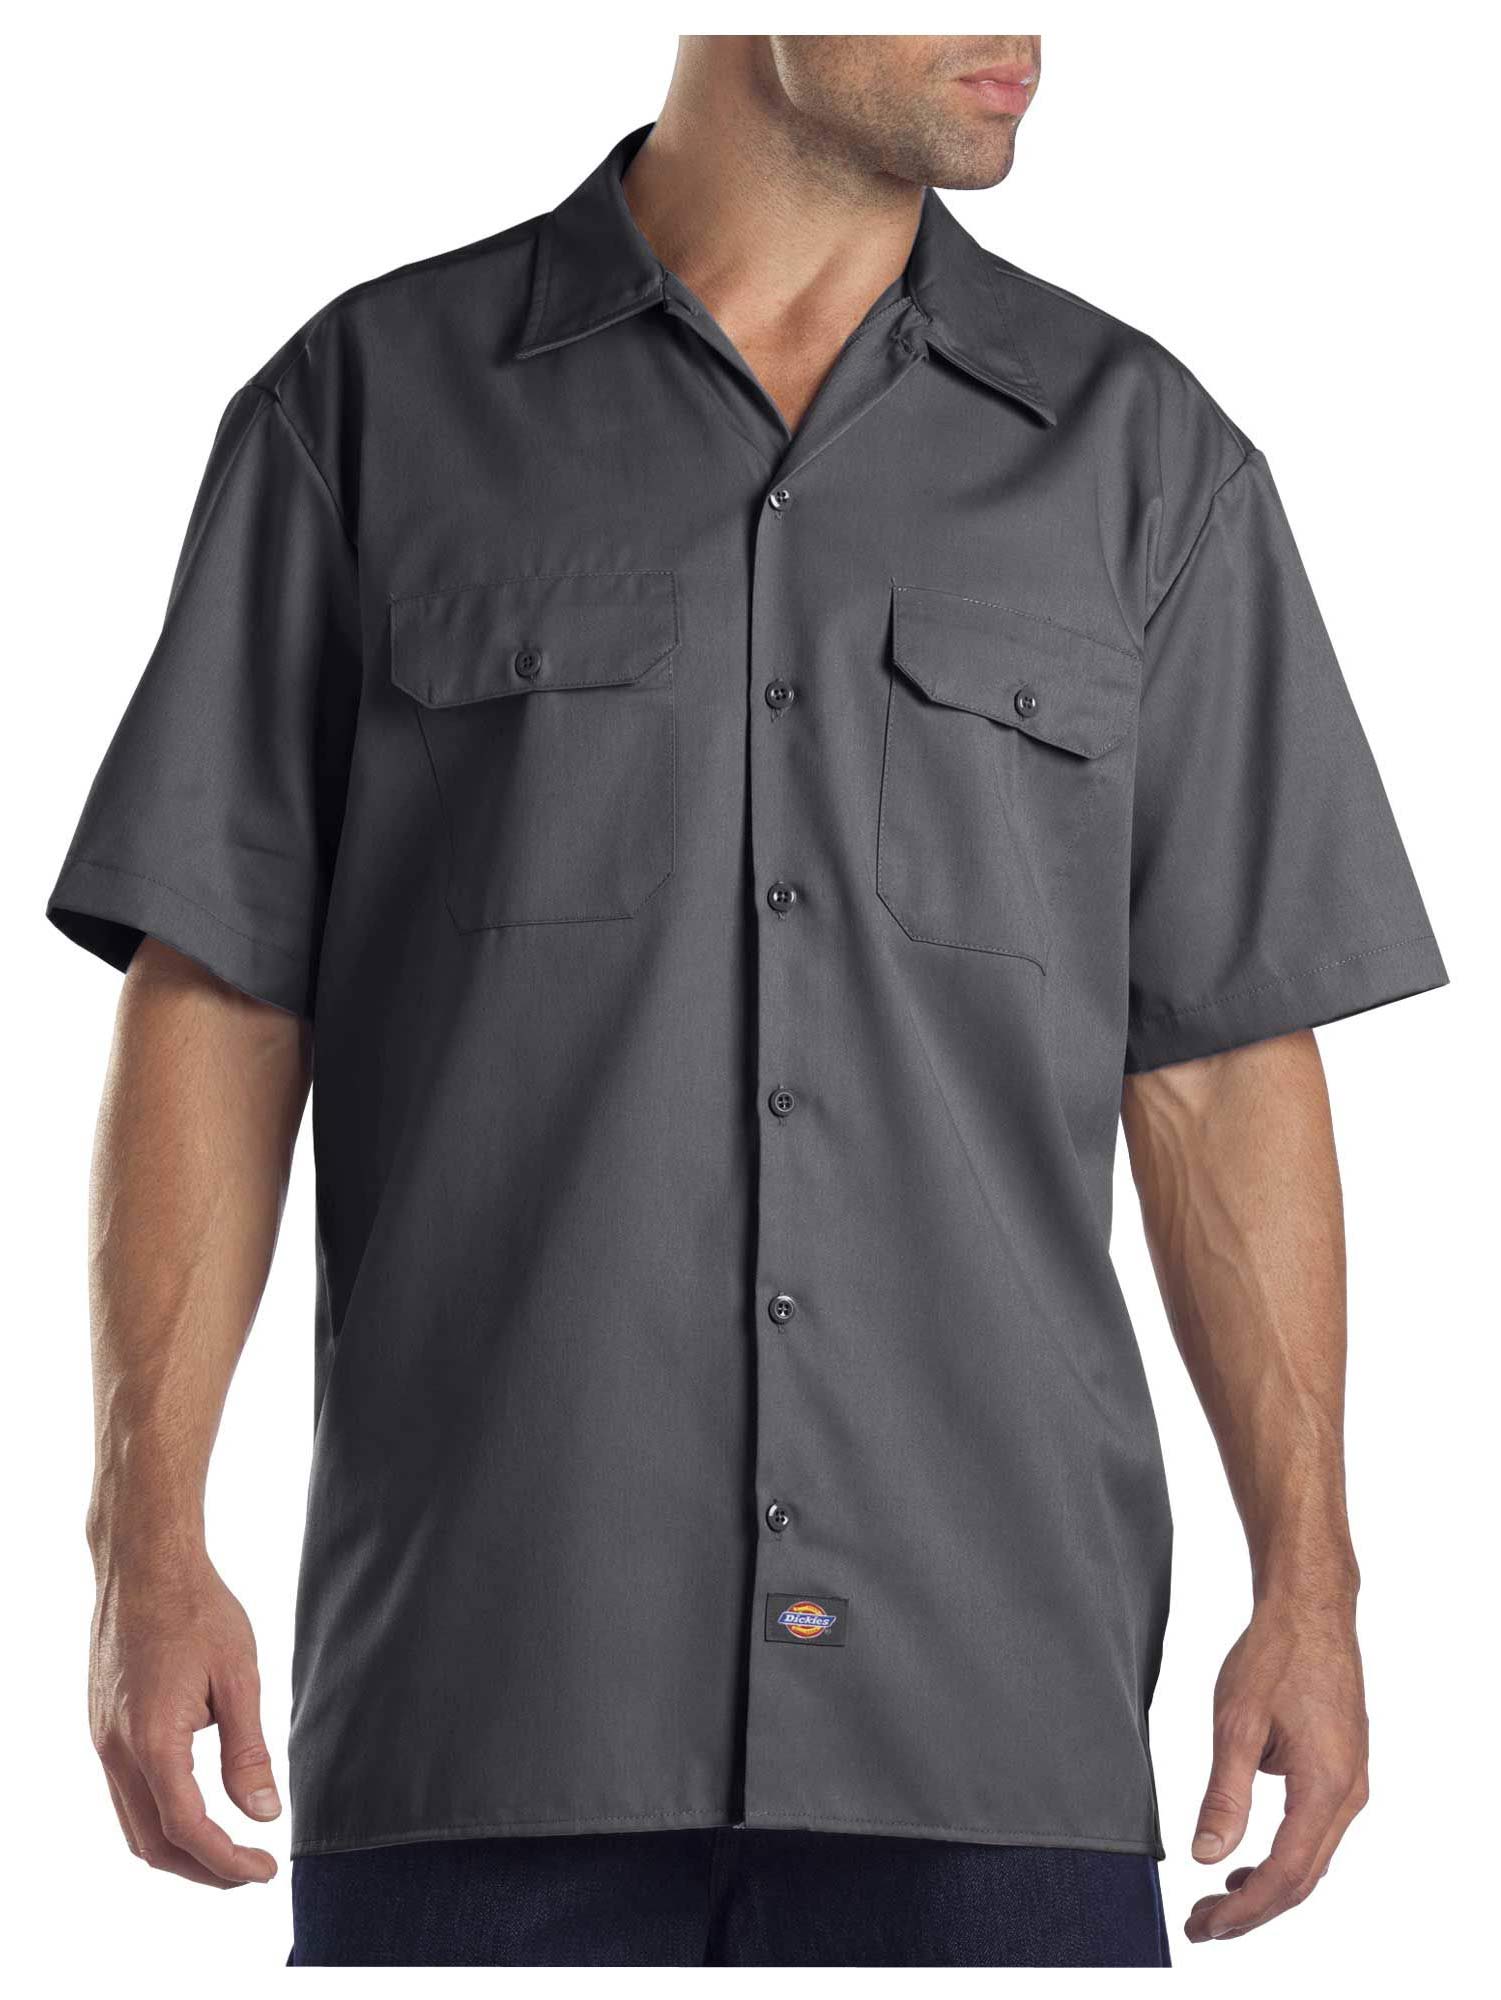 Dickies Original Fit Short Sleeve Button Front Work Shirt - 1574